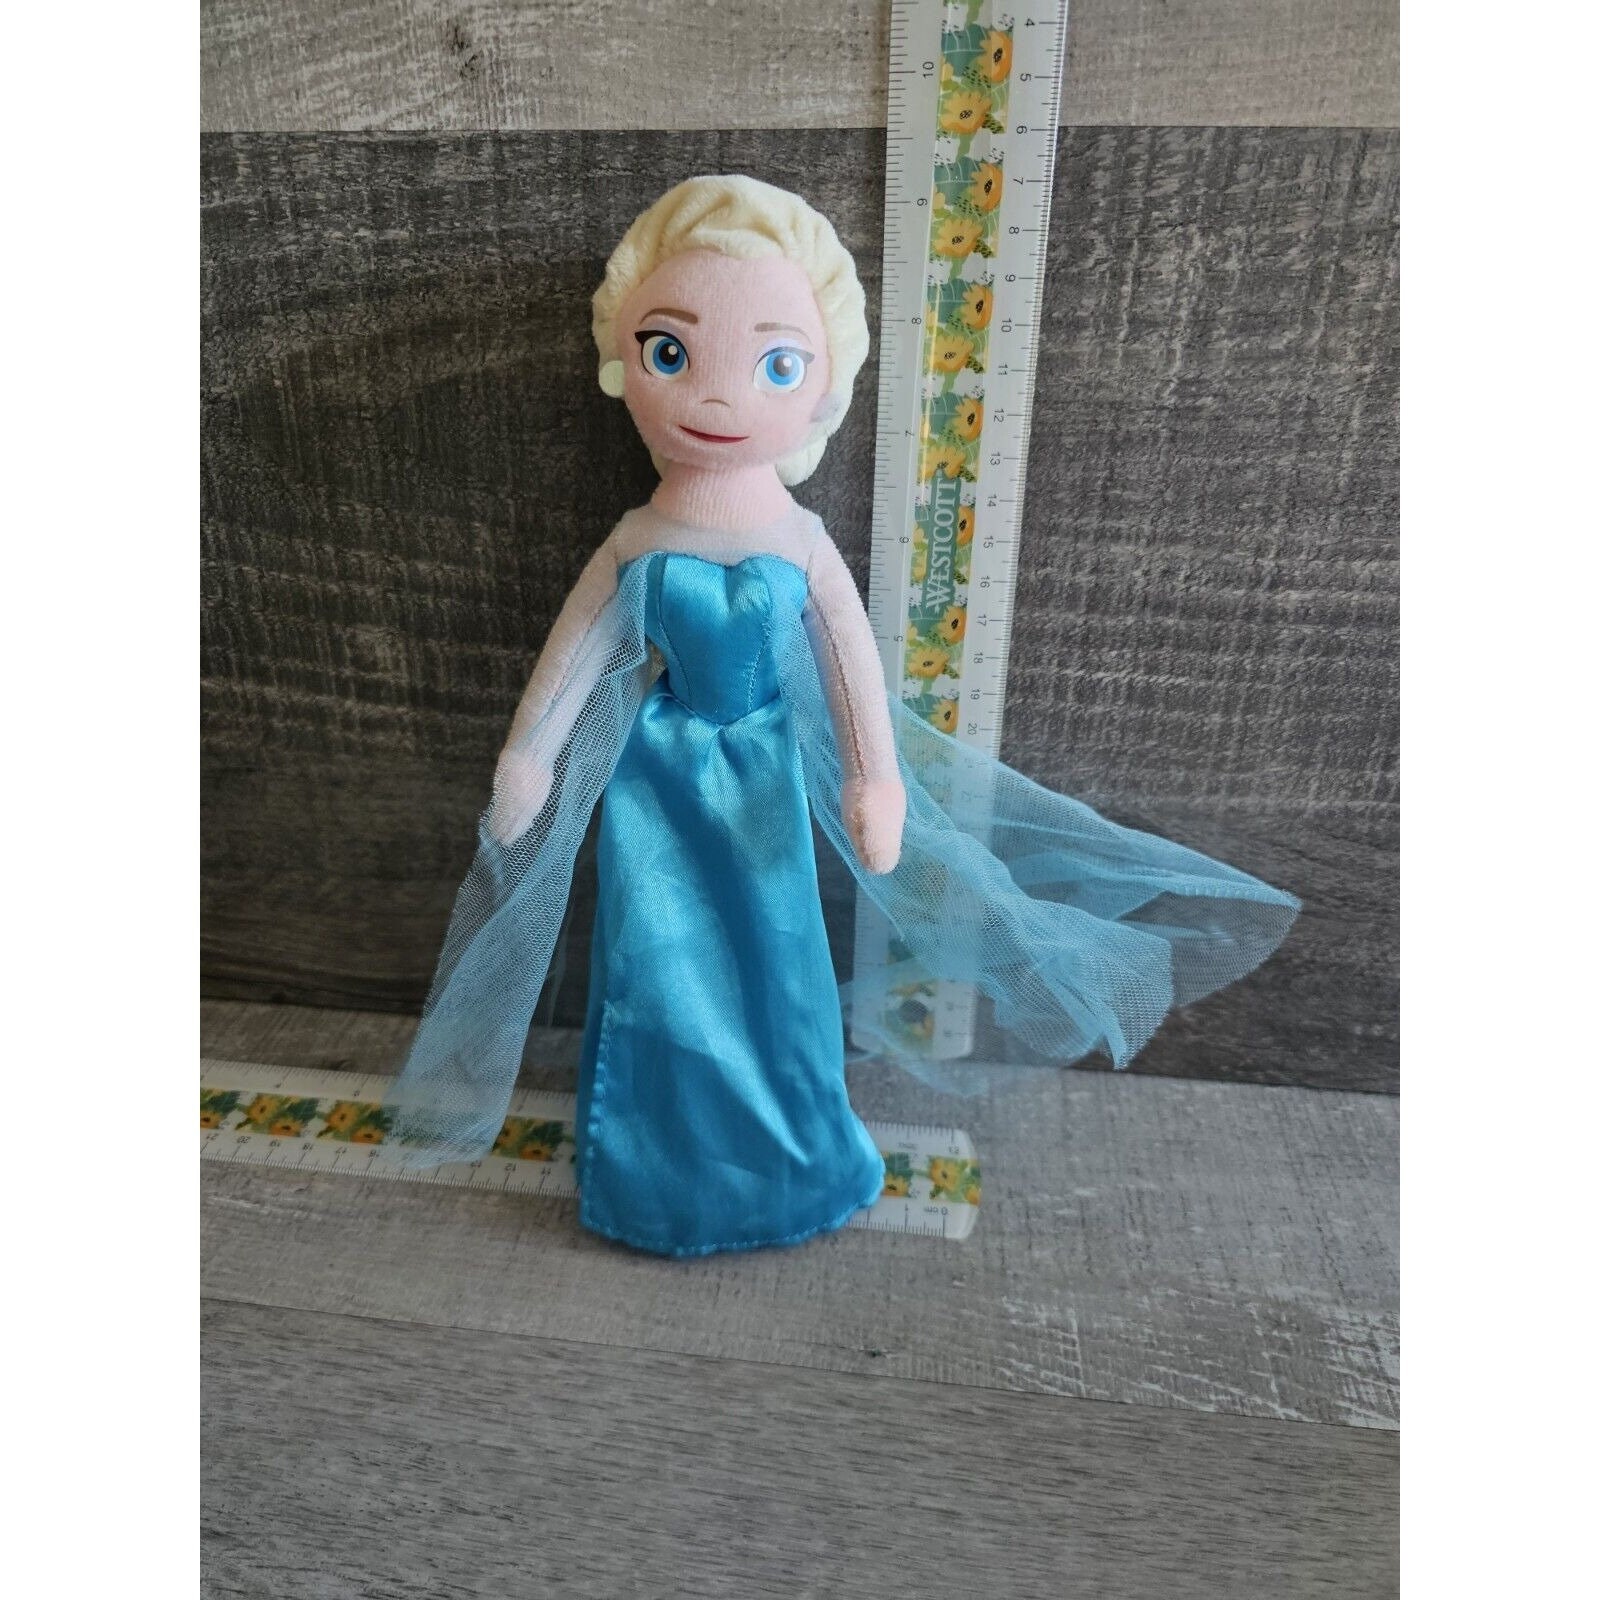 Free STL file frozen : Elsa From Frozen Free Kids Toy Beautiful